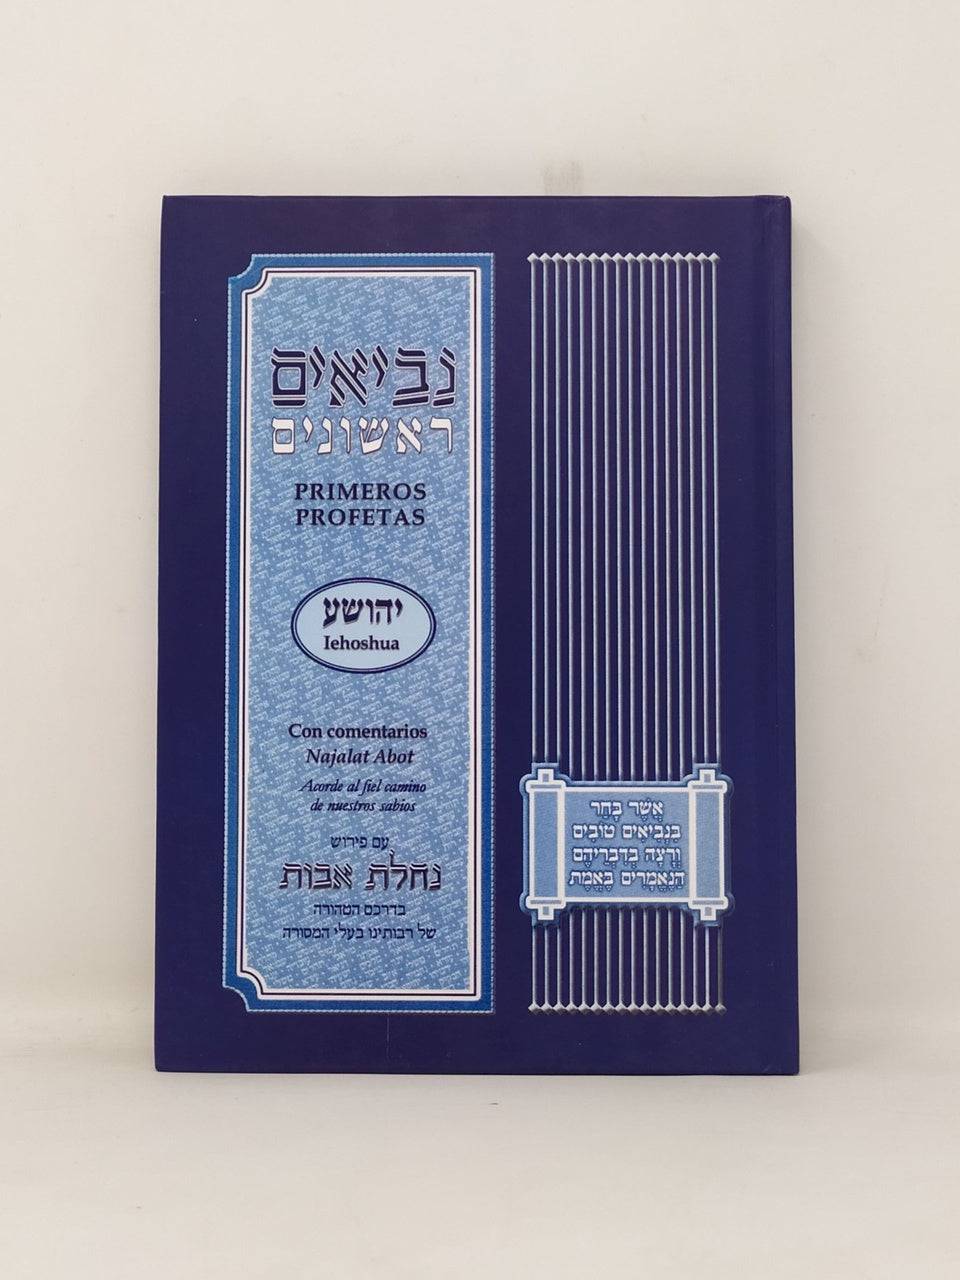 Primeros profetas Iehoshua - Libreria Jerusalem Centro